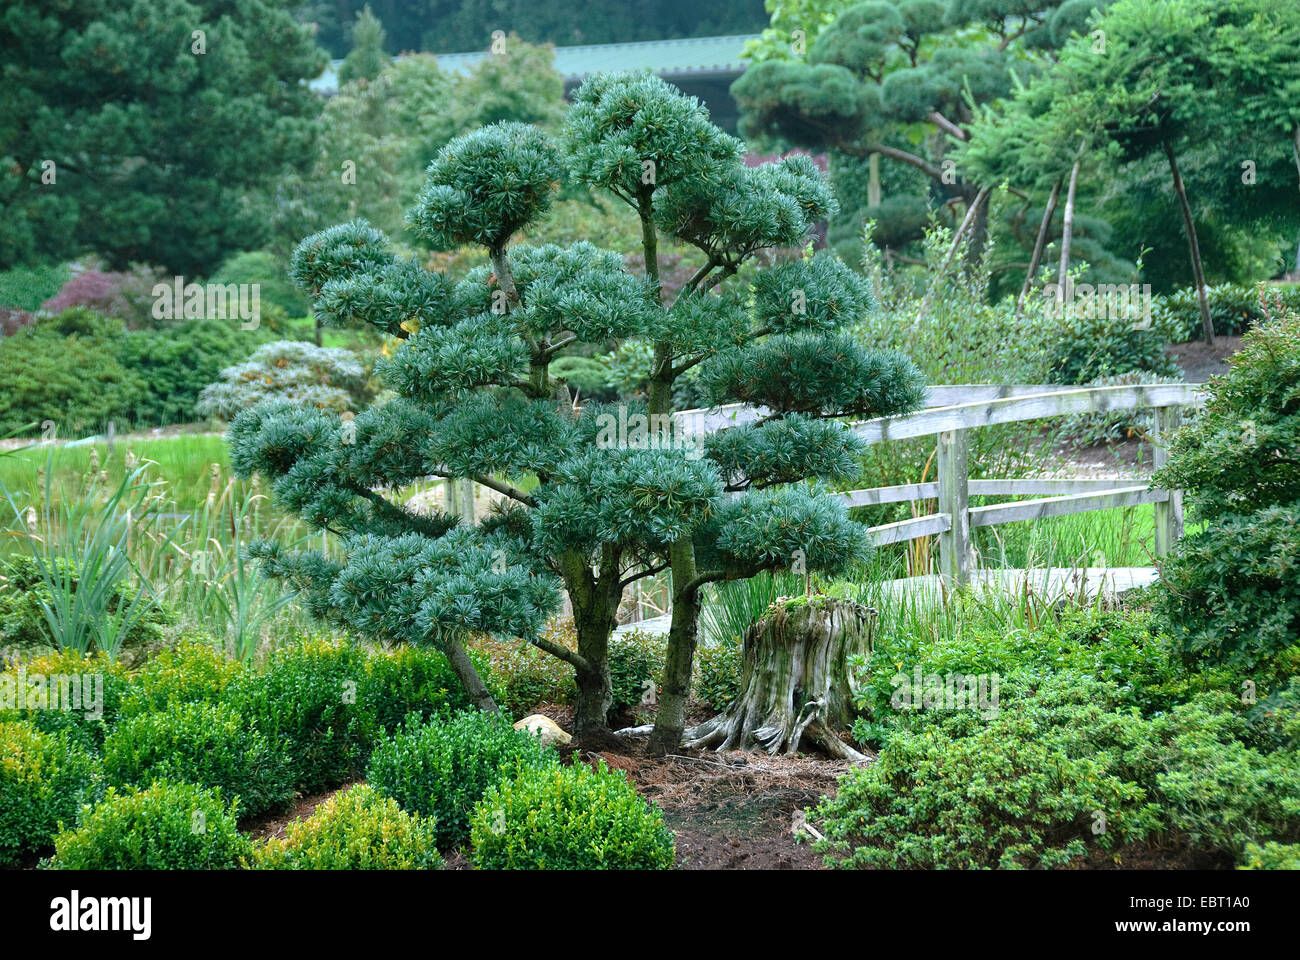 Pin blanc du Japon (Pinus parviflora 'Glauca', Pinus parviflora Glauca), le cultivar glauca que jardin bonsai Banque D'Images